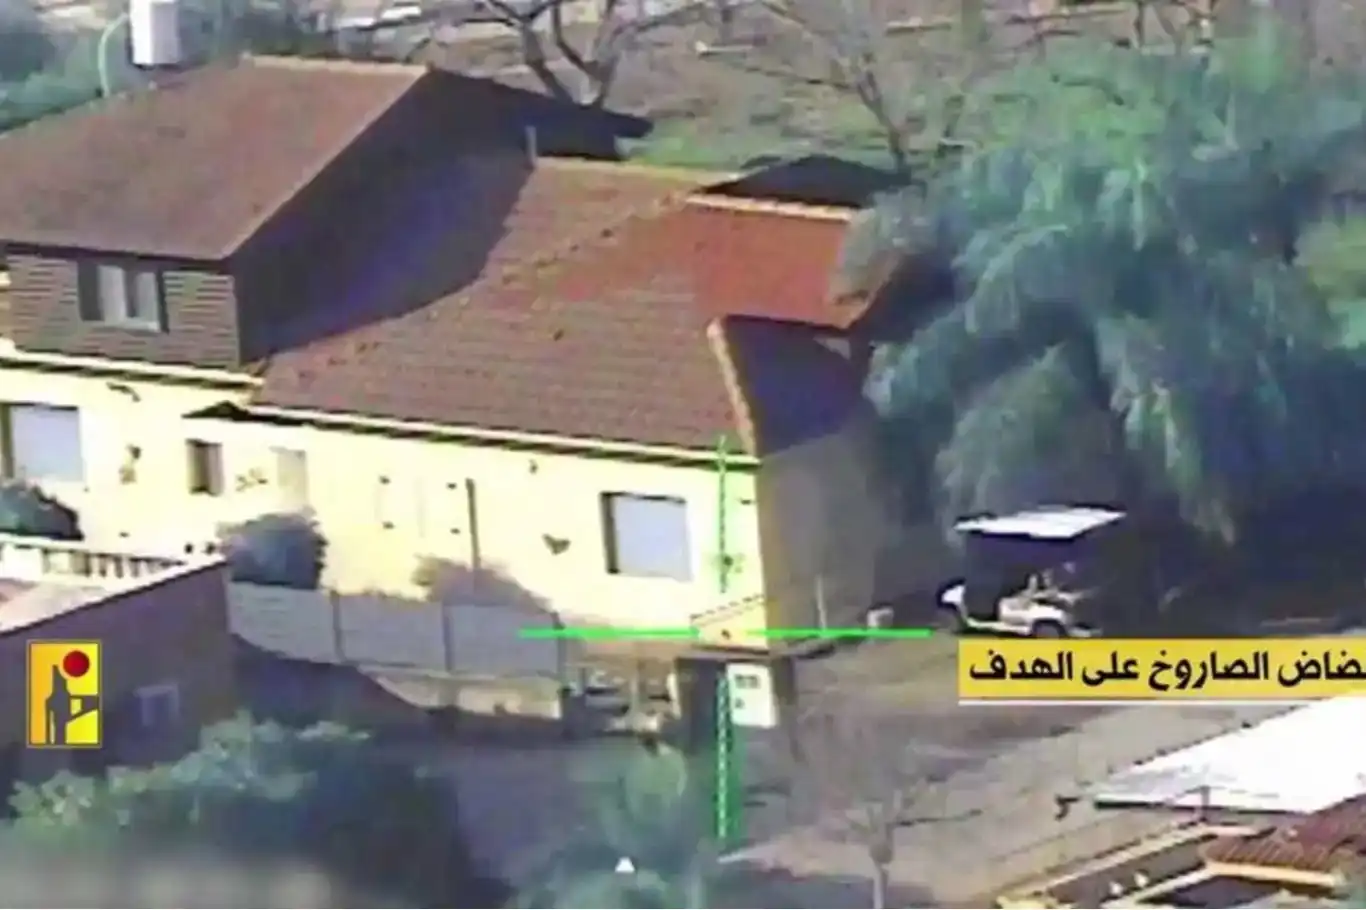 حزب الله به ساختمان هایی که سربازان اشغالگر مستقر شده بودند حمله کرد